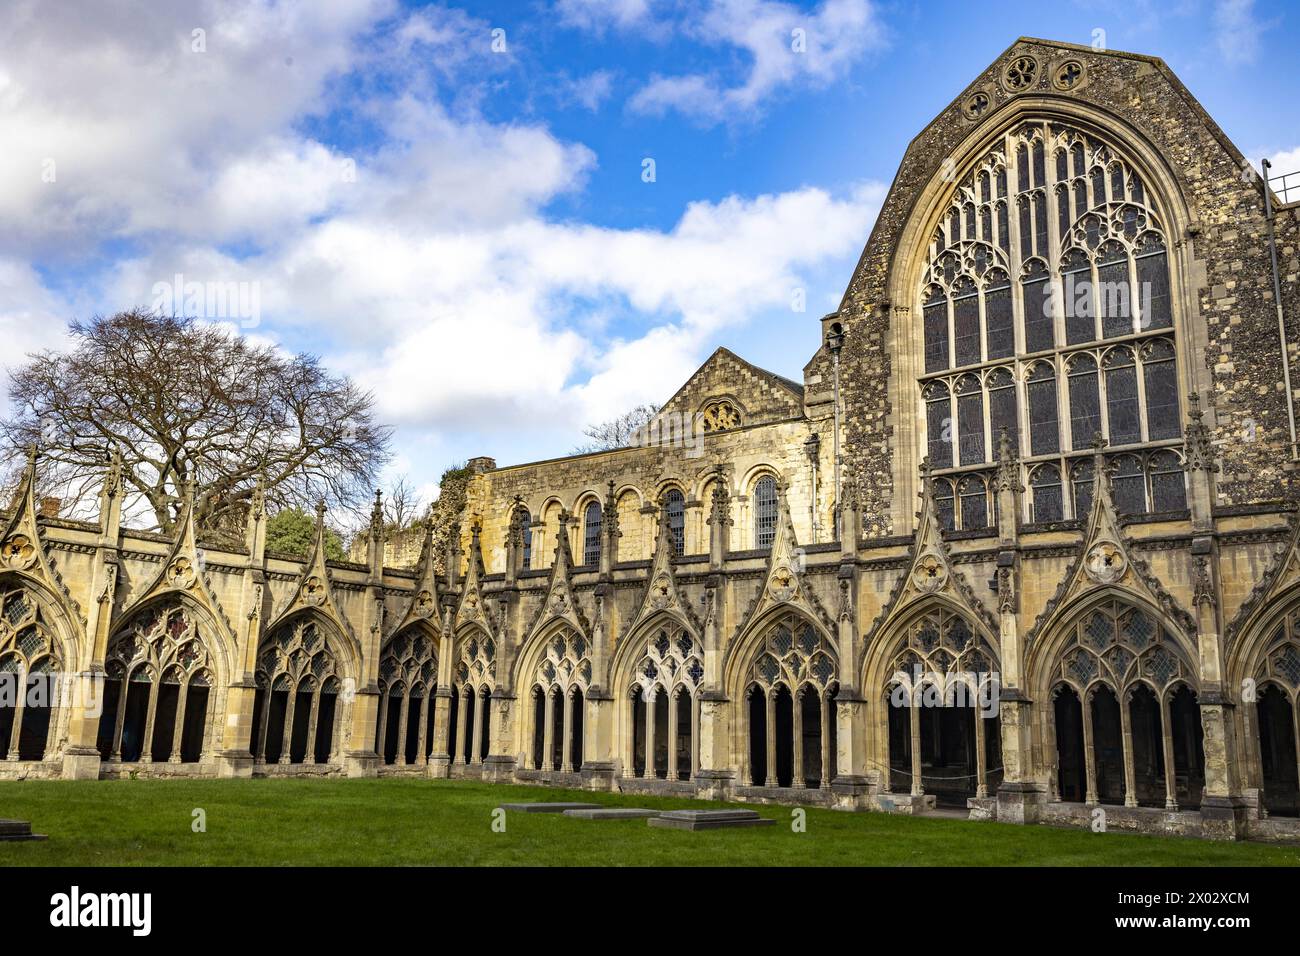 Le cloître, la Cathédrale de Canterbury, Site du patrimoine mondial de l'UNESCO, Canterbury, Kent, Angleterre, Royaume-Uni, Europe Banque D'Images